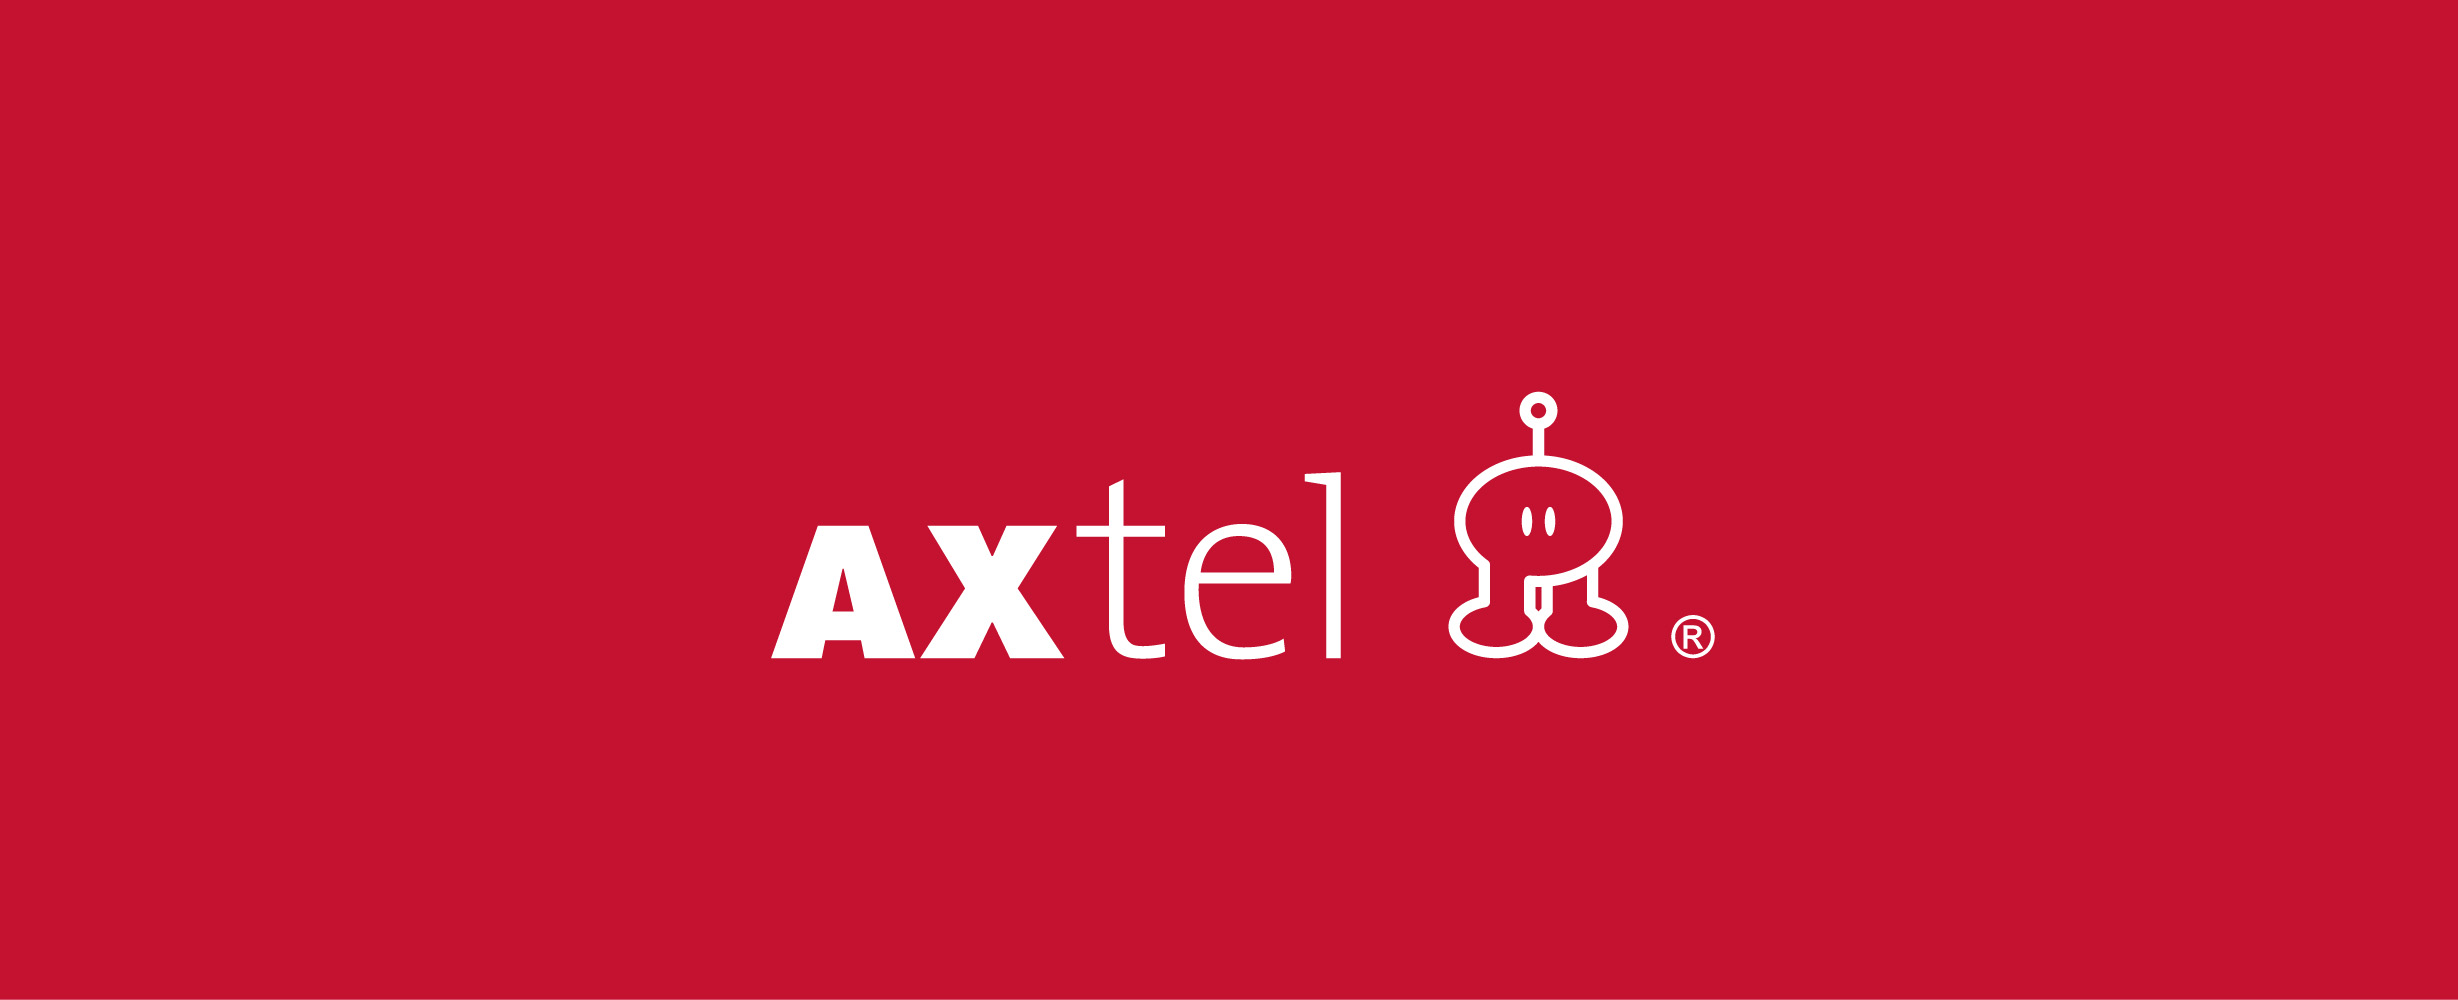 Axtel tiene deuda millonaria y AT&T quiere comprarla - Your Web Space